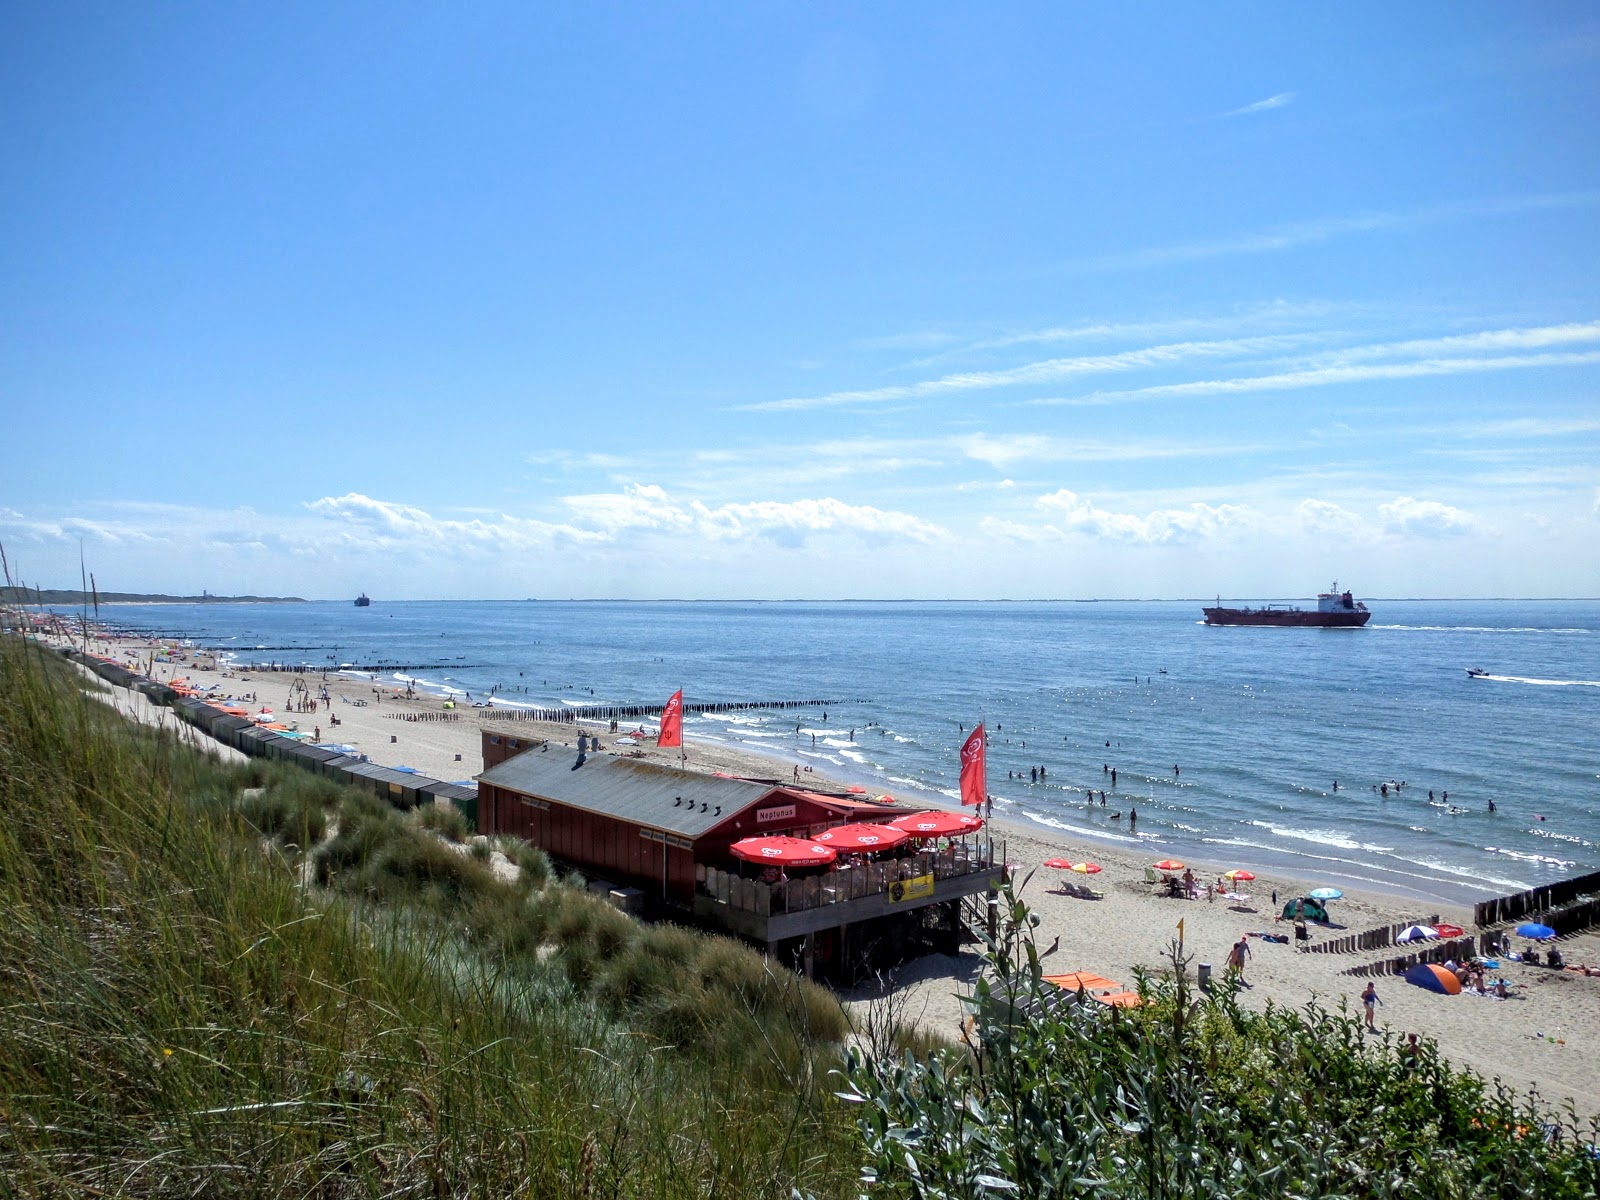 Joossesweg beach'in fotoğrafı parlak kum yüzey ile